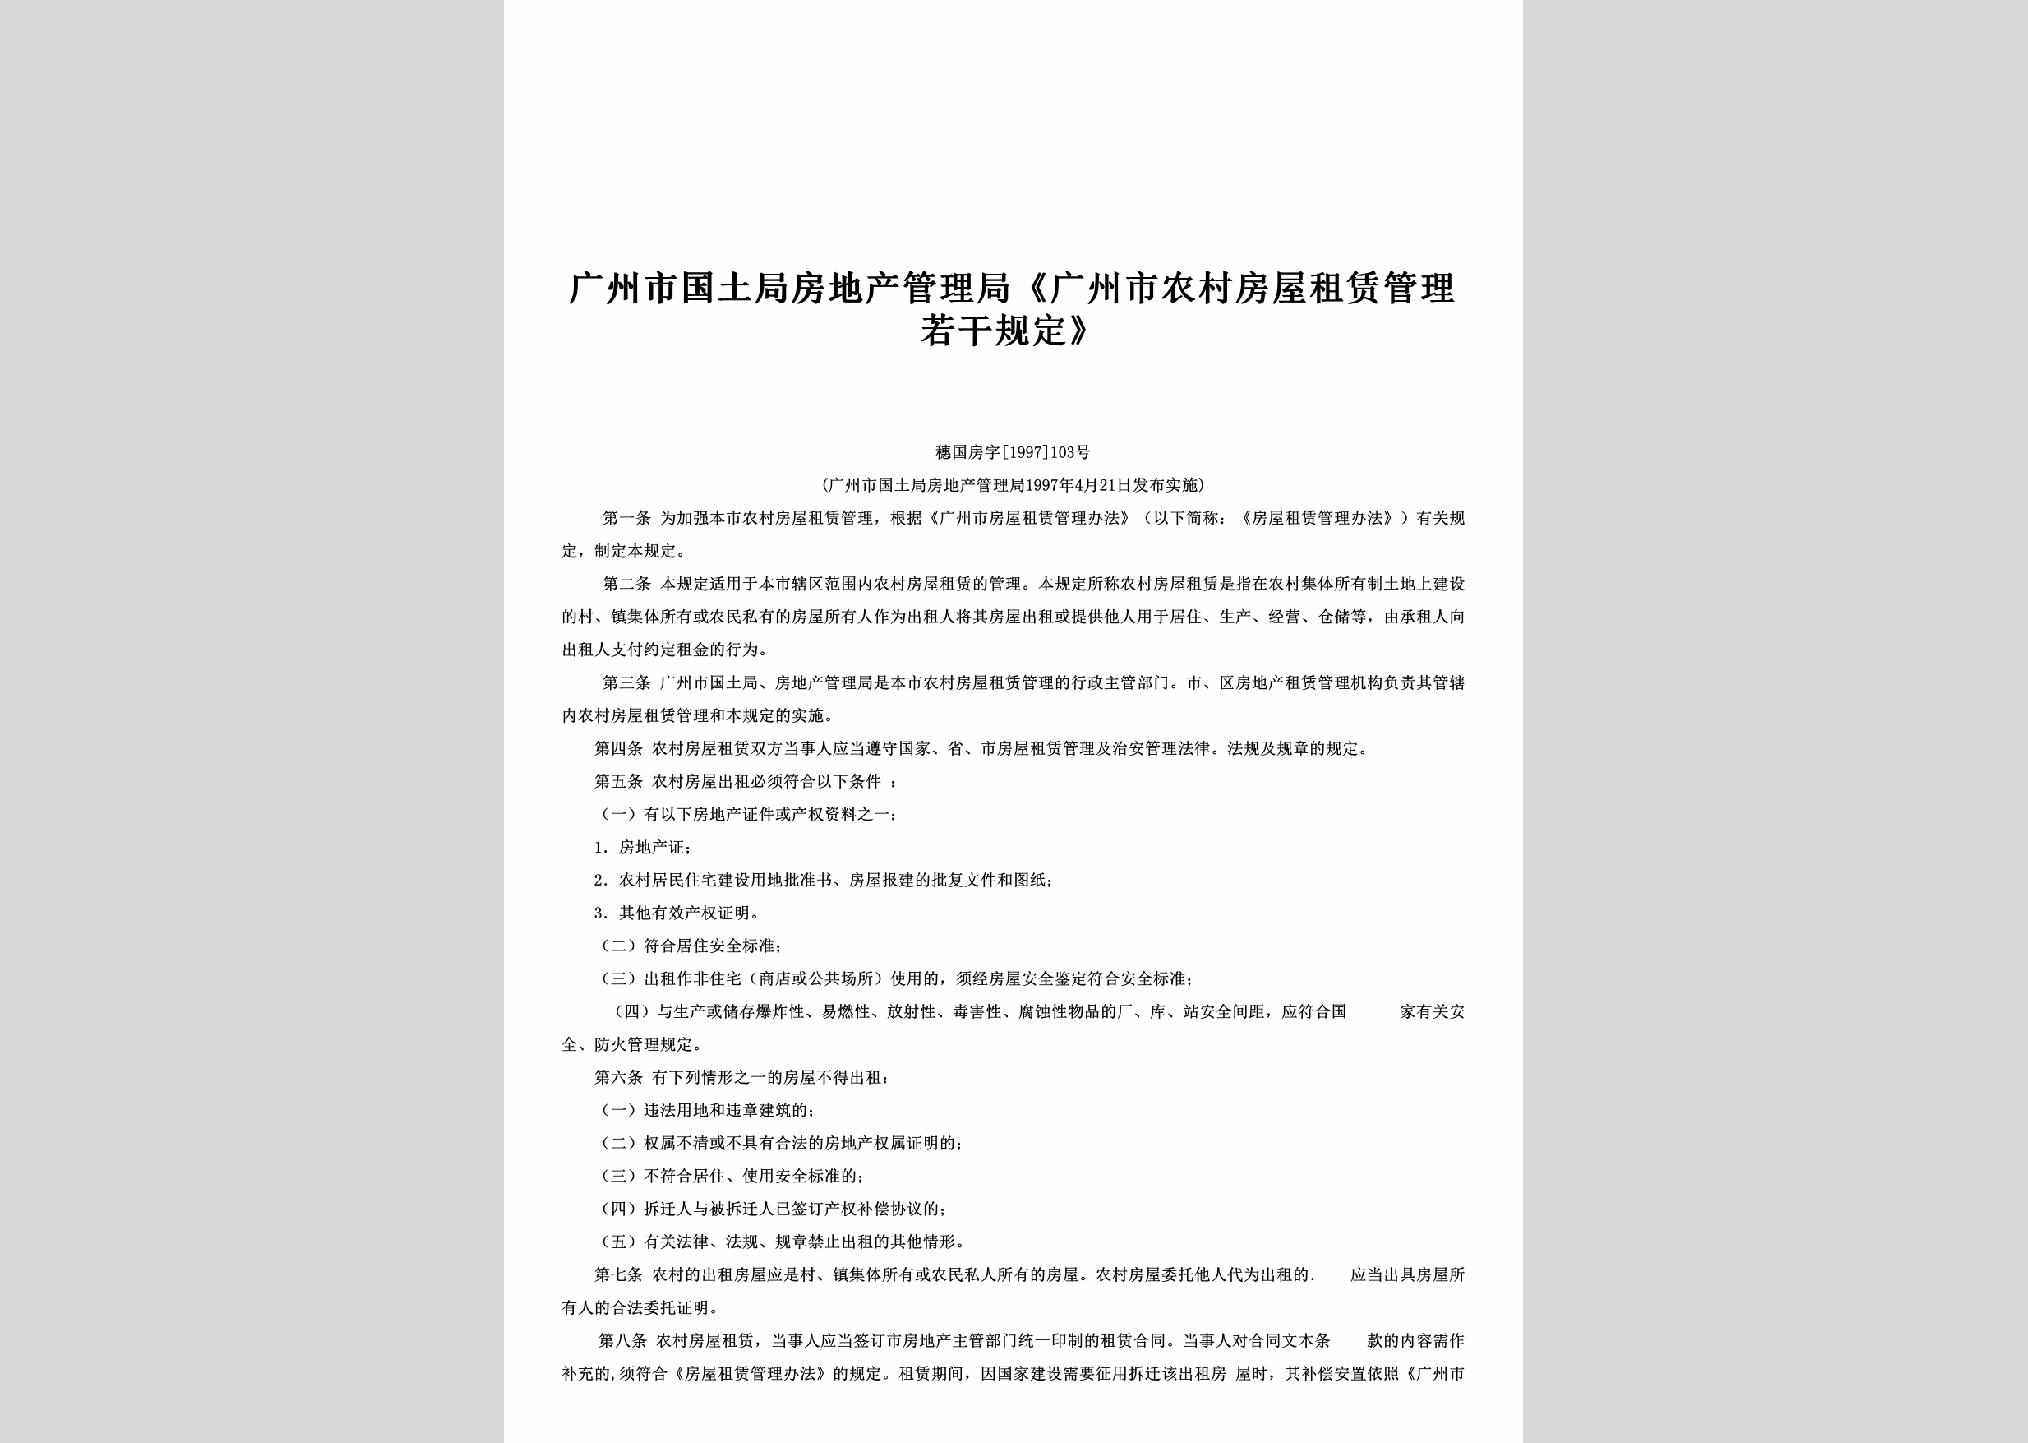 穗国房字[1997]103号：《广州市农村房屋租赁管理若干规定》